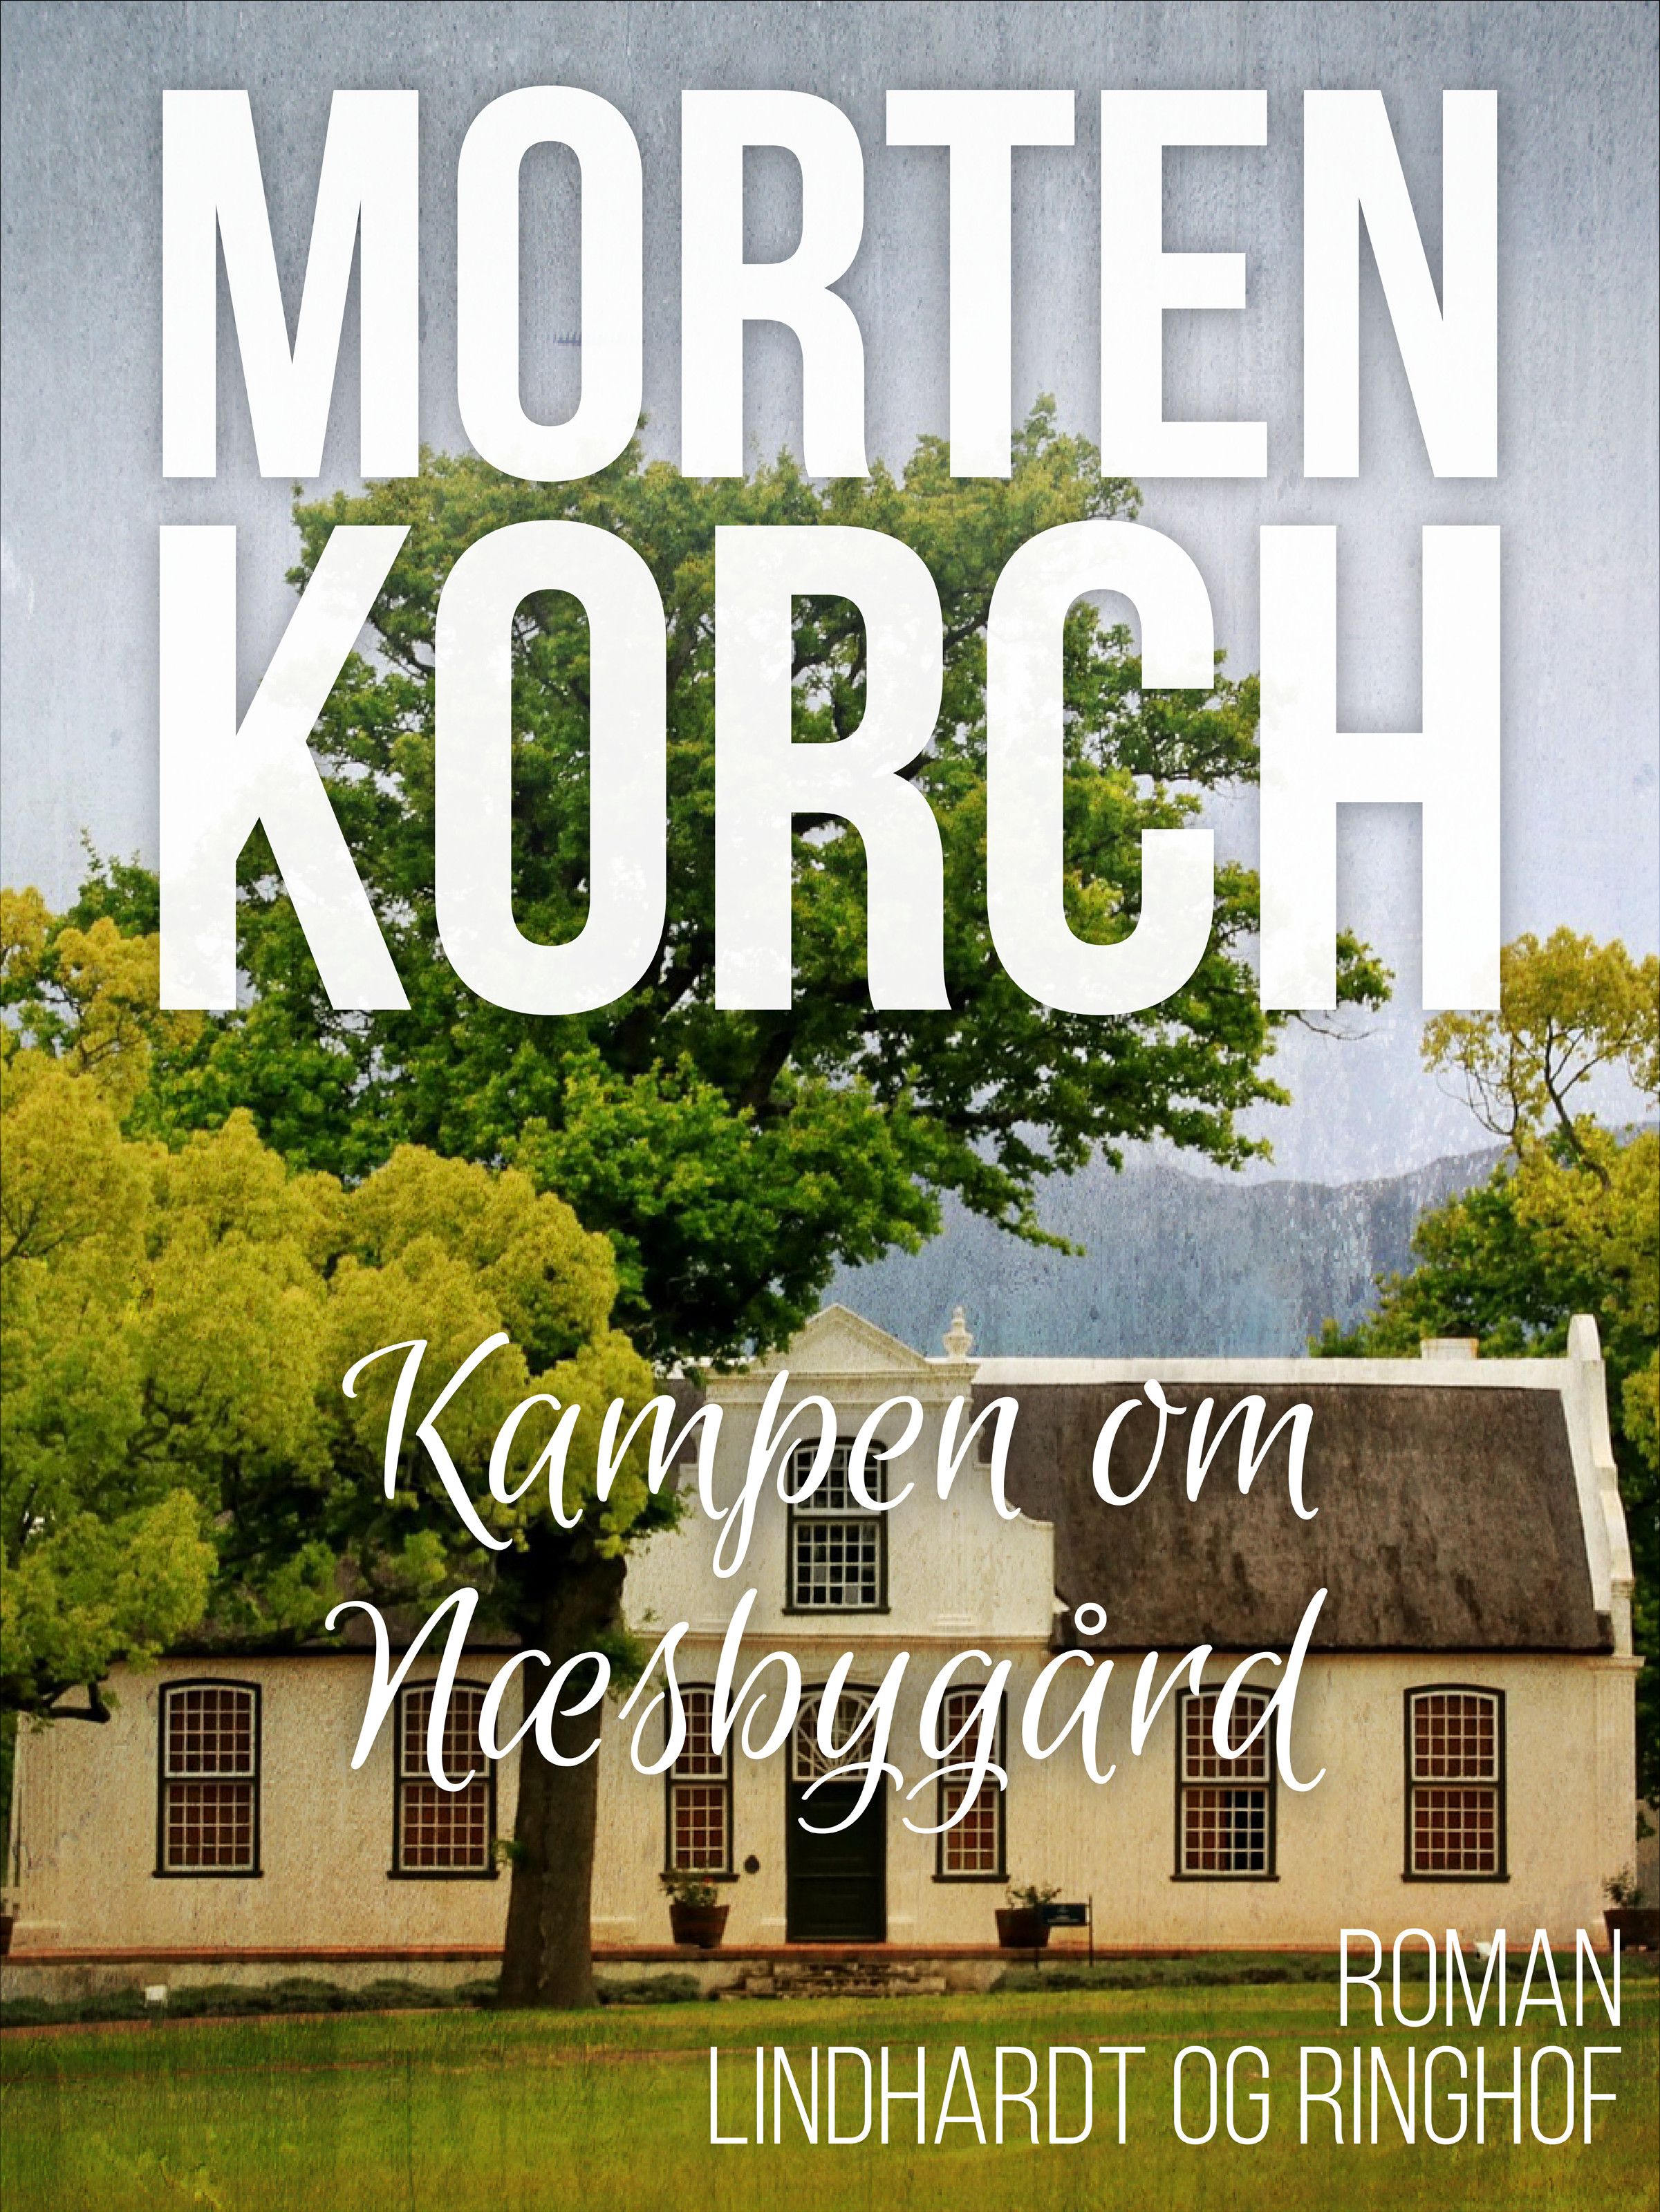 Kampen om Næsbygård, ljudbok av Morten Korch